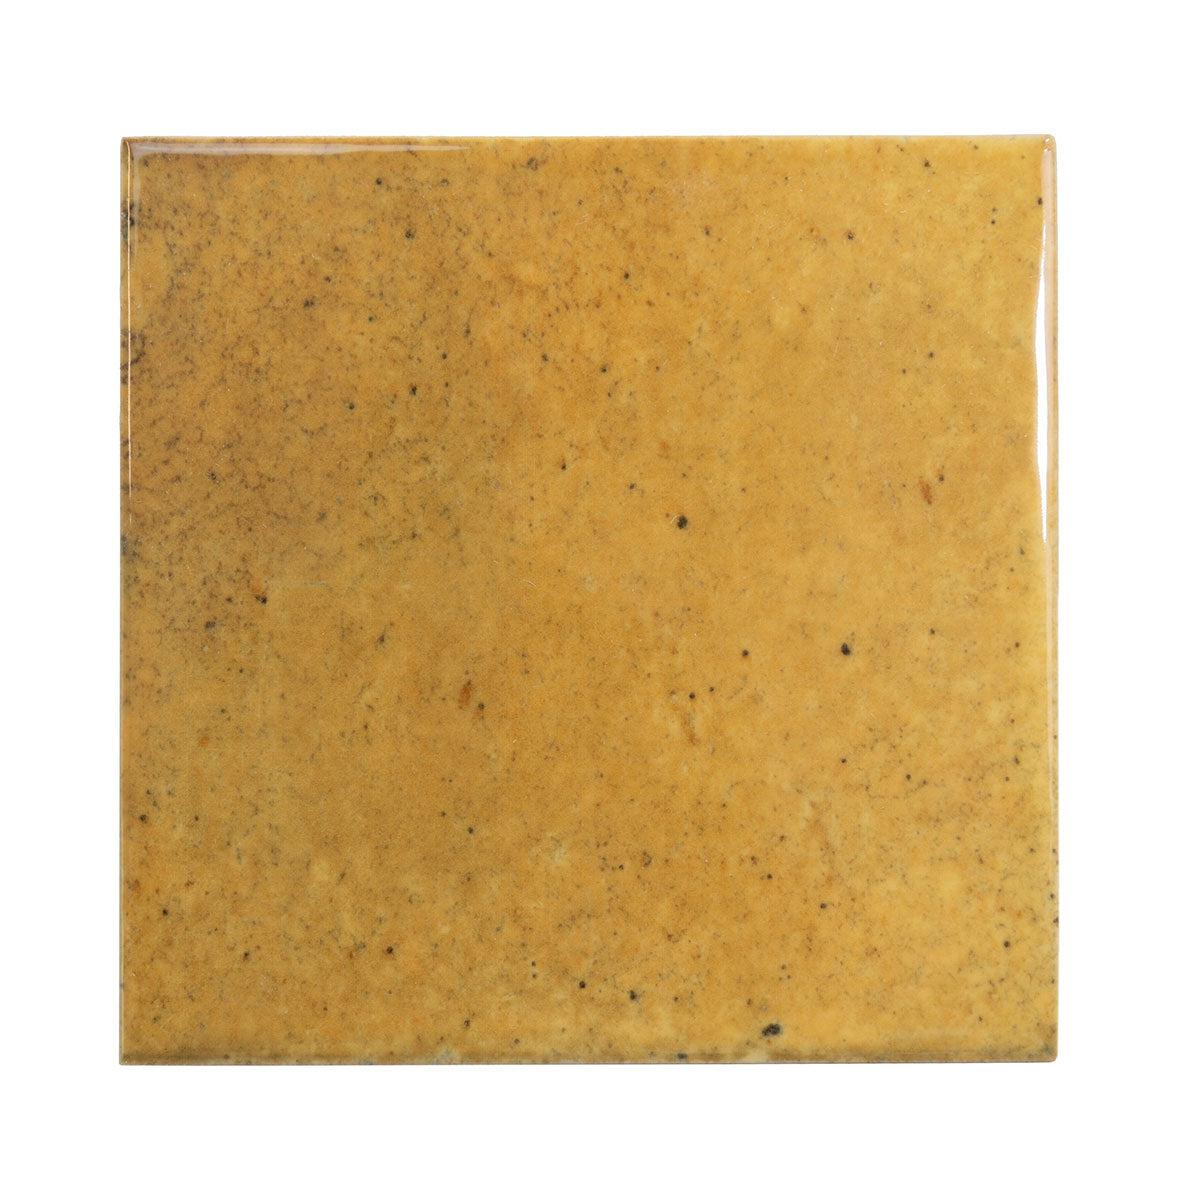 Luna Caramel 4x4 Ceramic Square Tiles